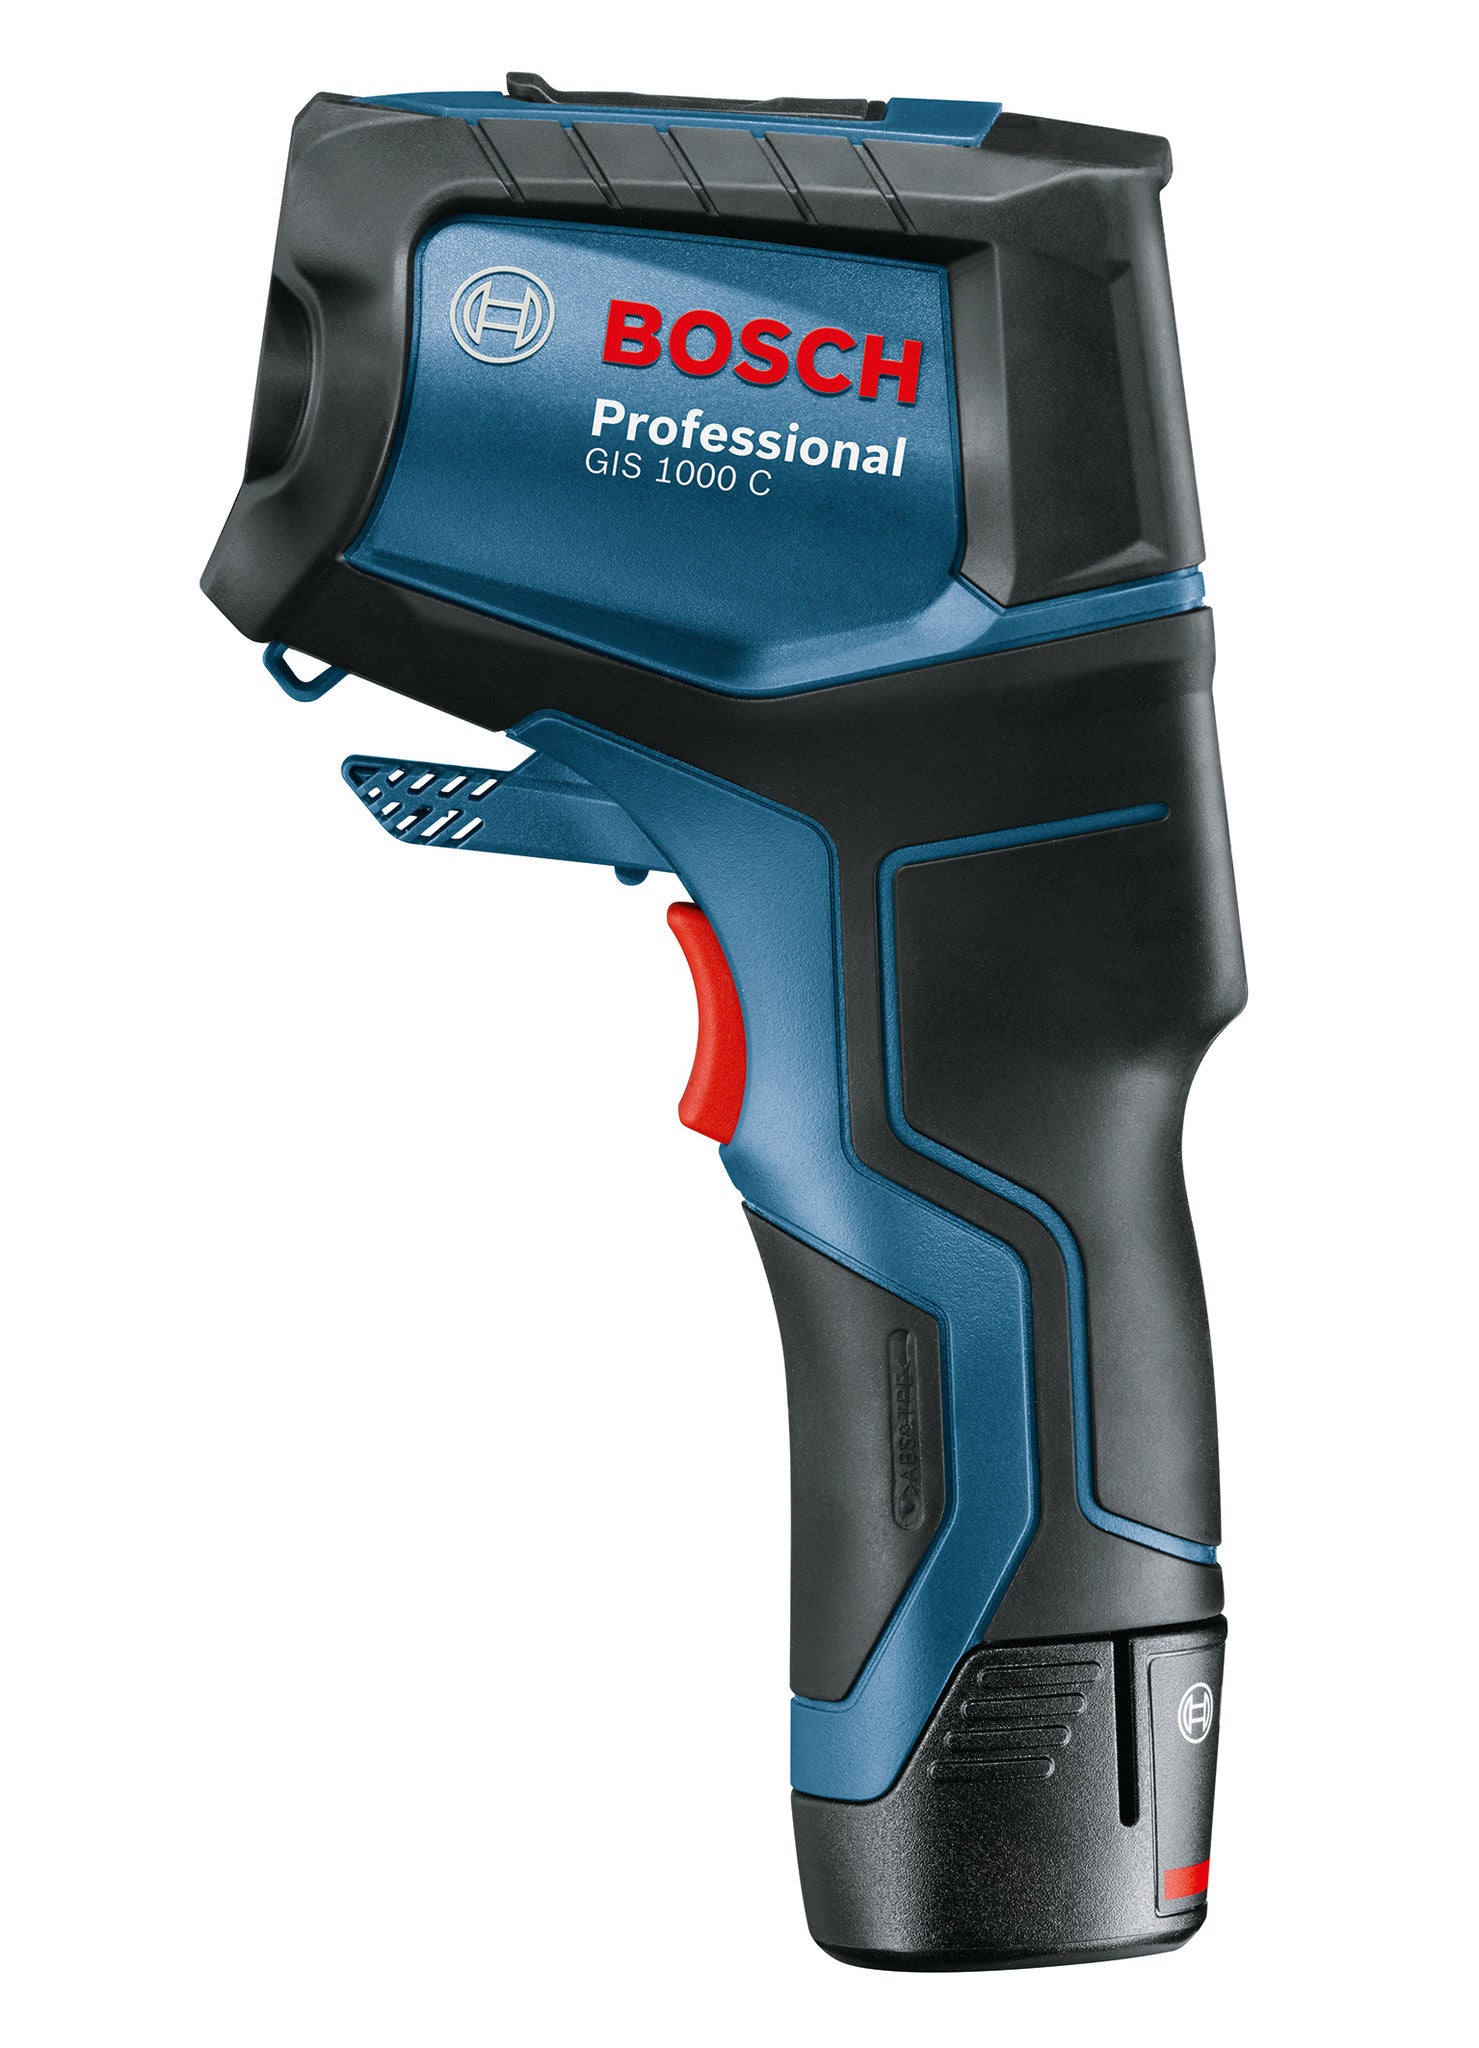 Rilevatore Termico Bosch GIS 1000 C con L-Box e Accessori